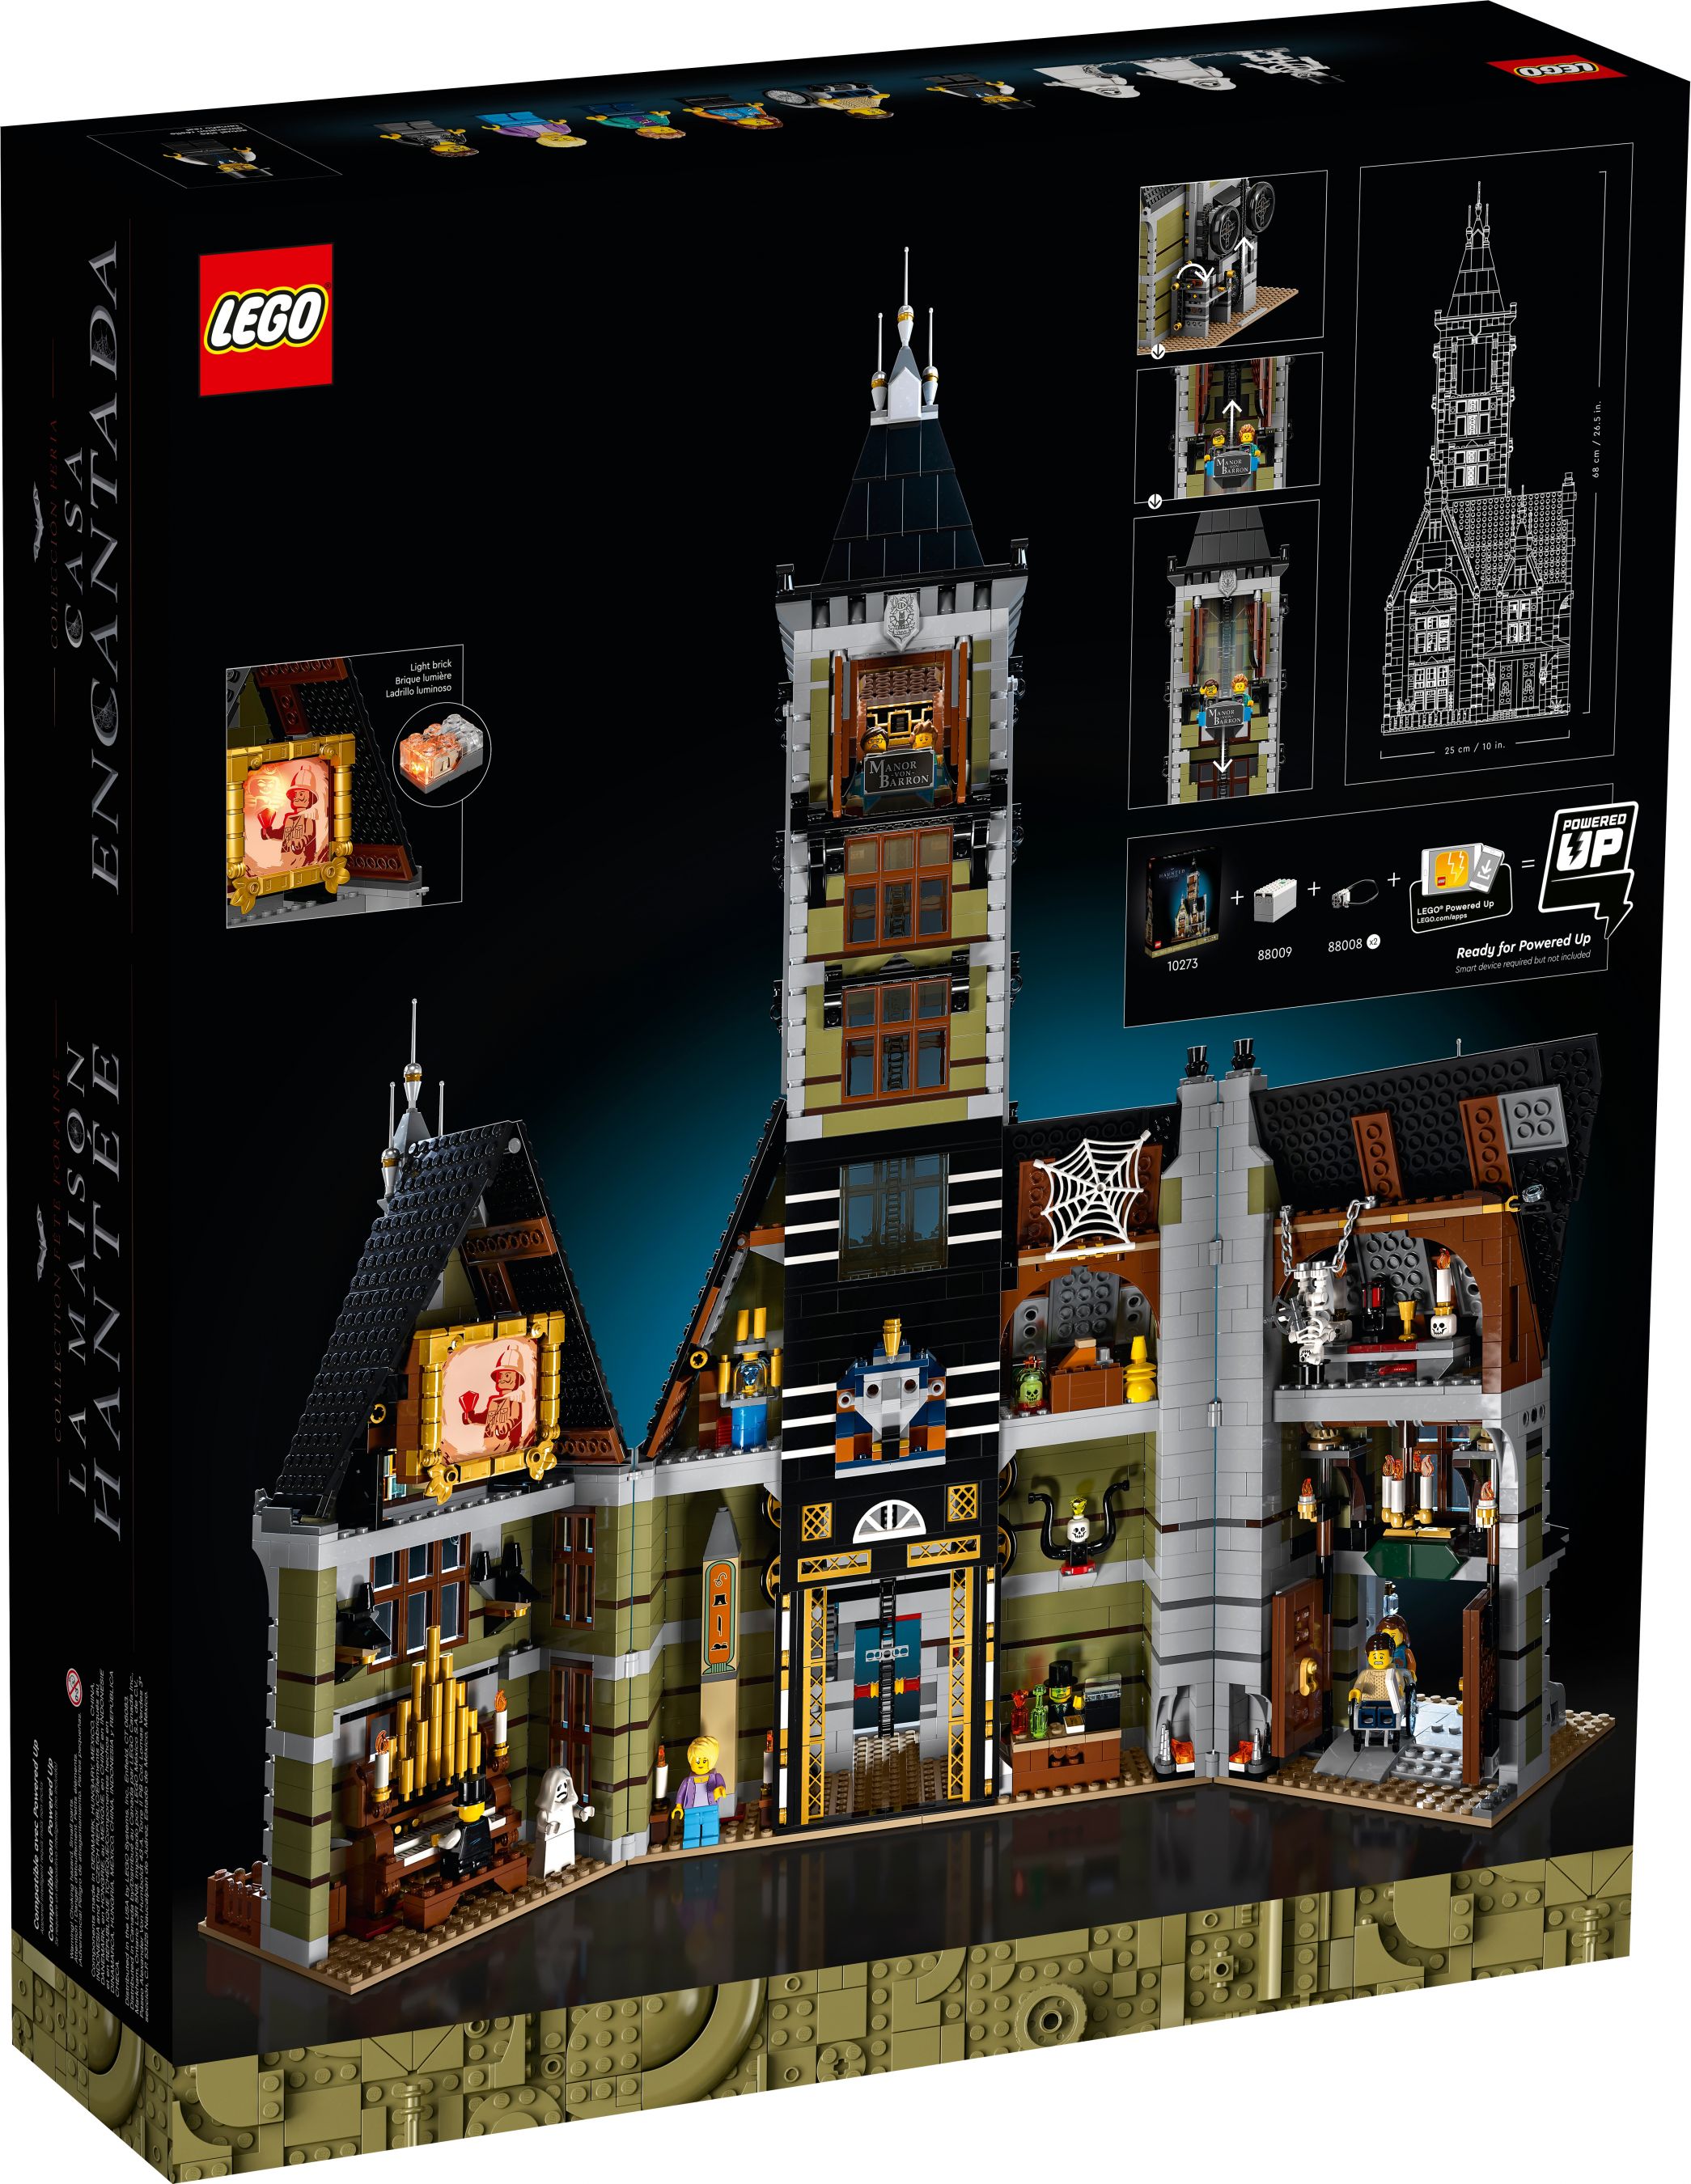 LEGO Advanced Models 10273 Geisterhaus auf dem Jahrmarkt LEGO_10273_alt6.jpg